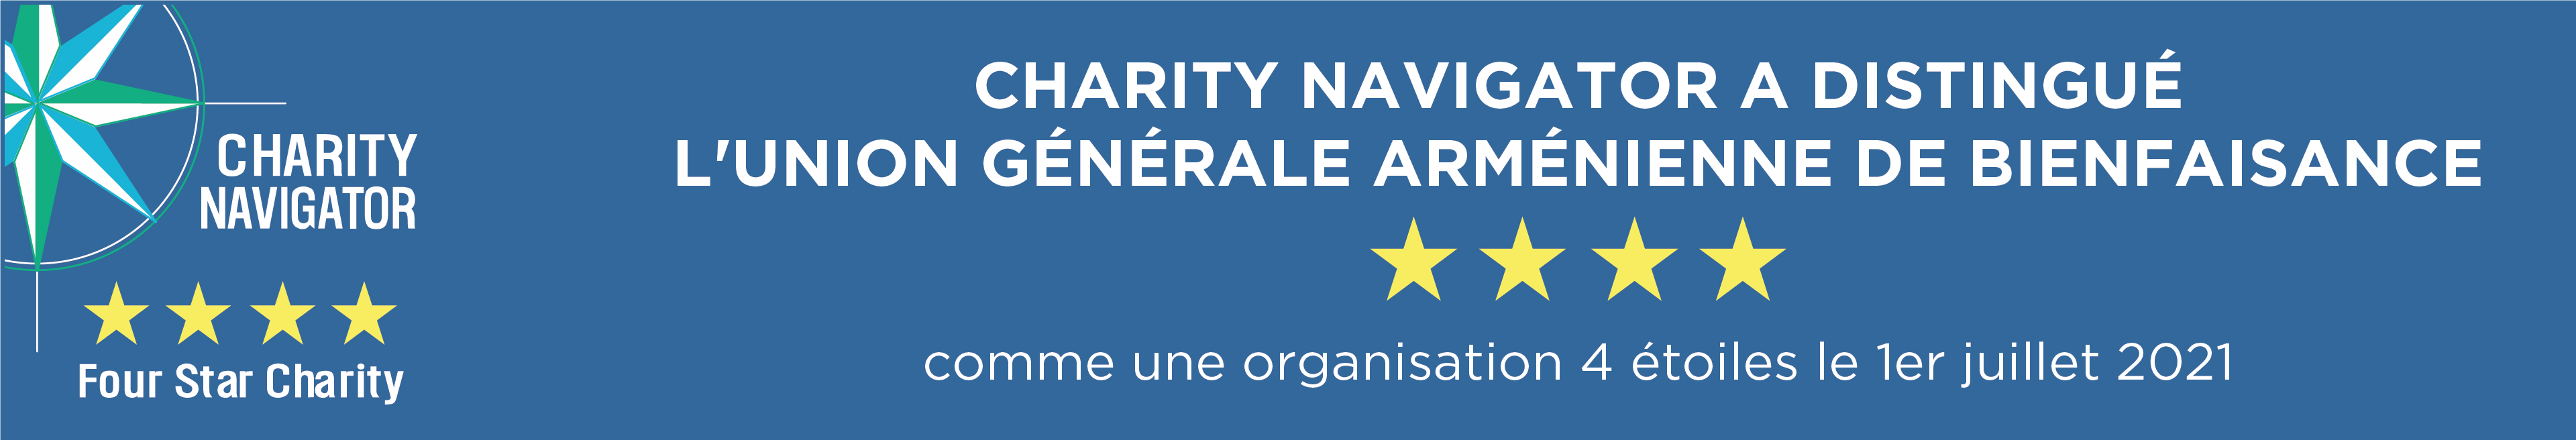 Charity Navigator a distingué l'Union Générale Arménienne de Bienfaisance